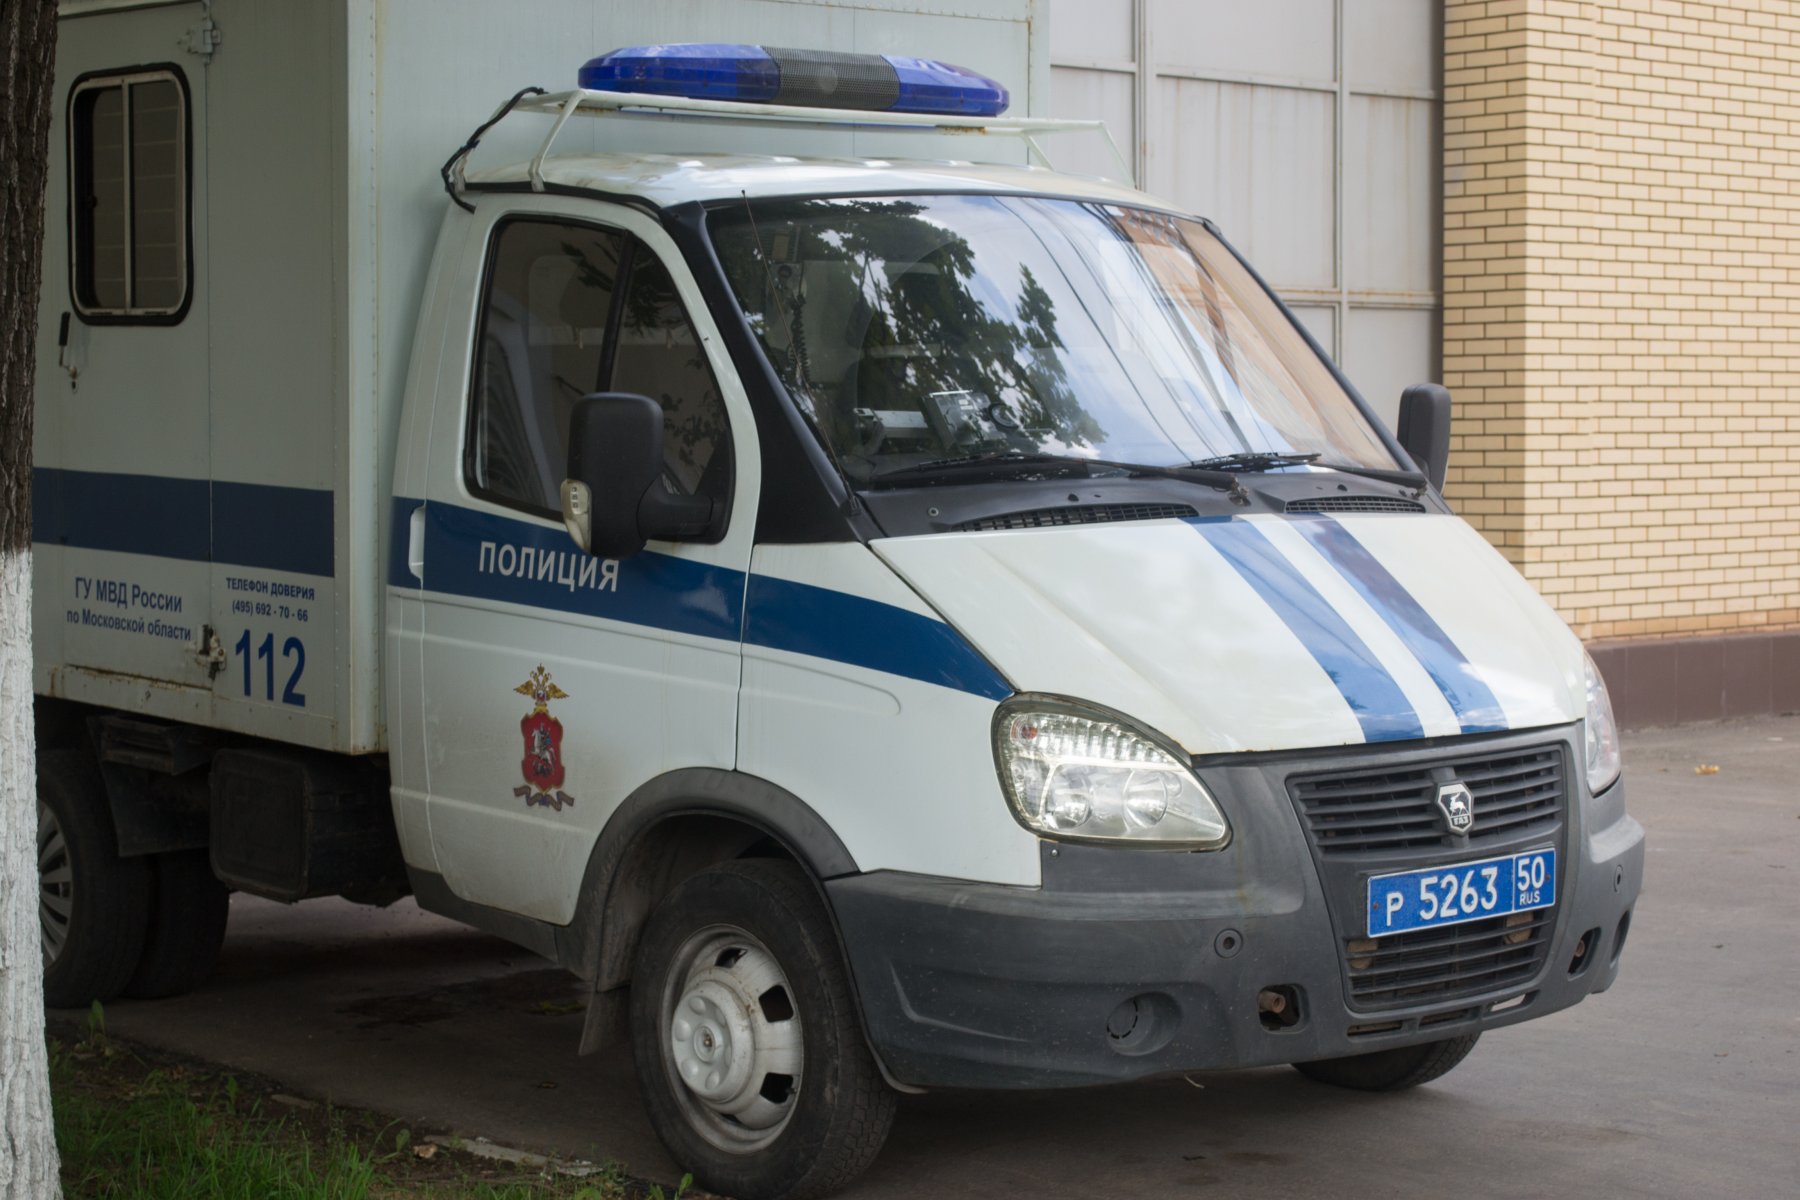 В Подольске задержали мужчину после его угрозы сбросить жену и сына с балкона